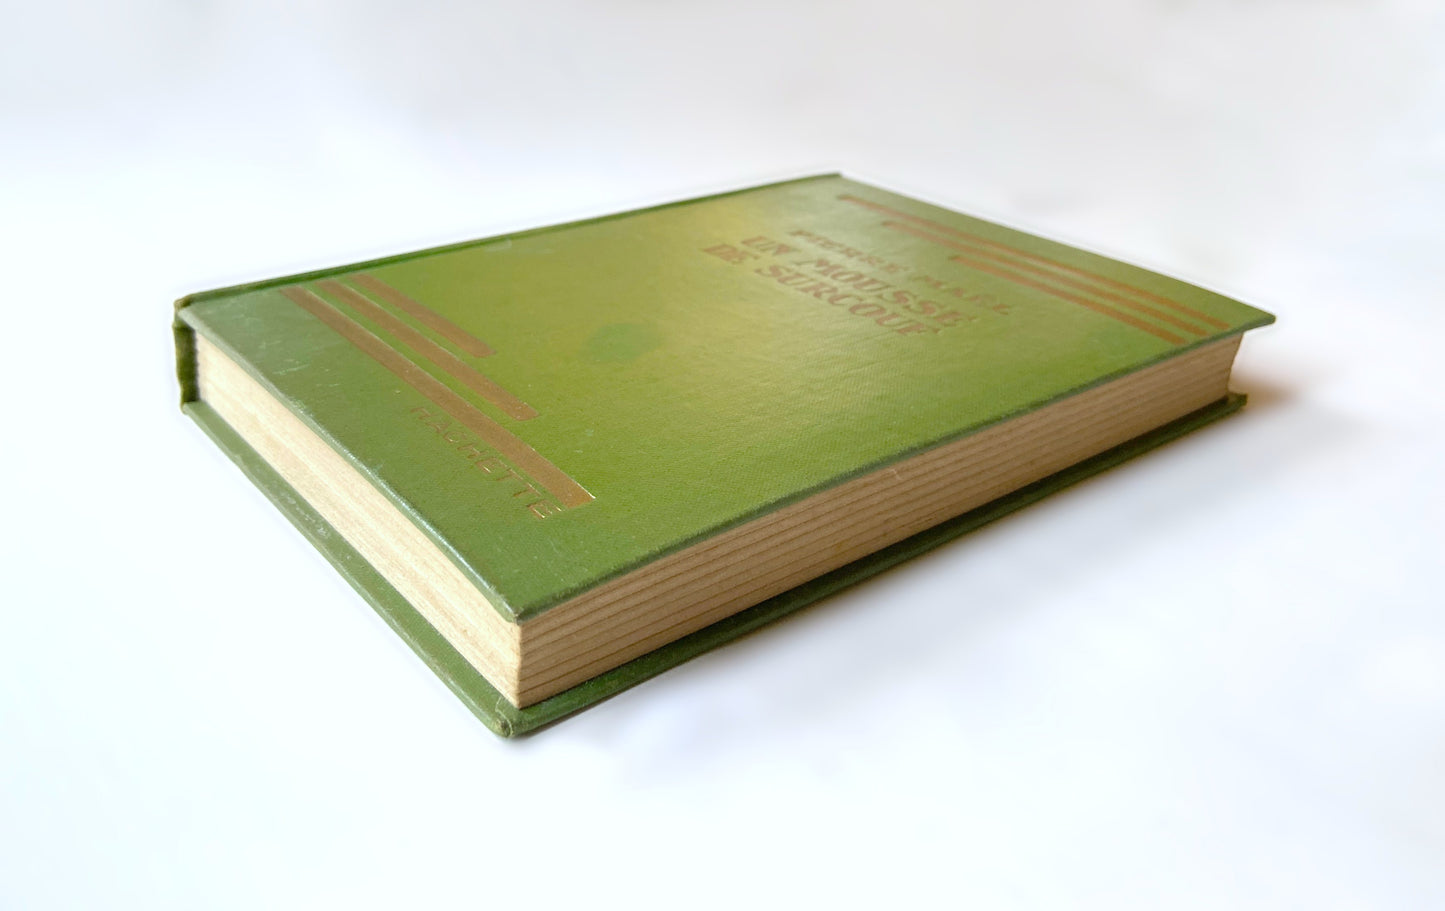 Livre «Un mousse de Surcouf» P. Maël, ed. Hachette 1925